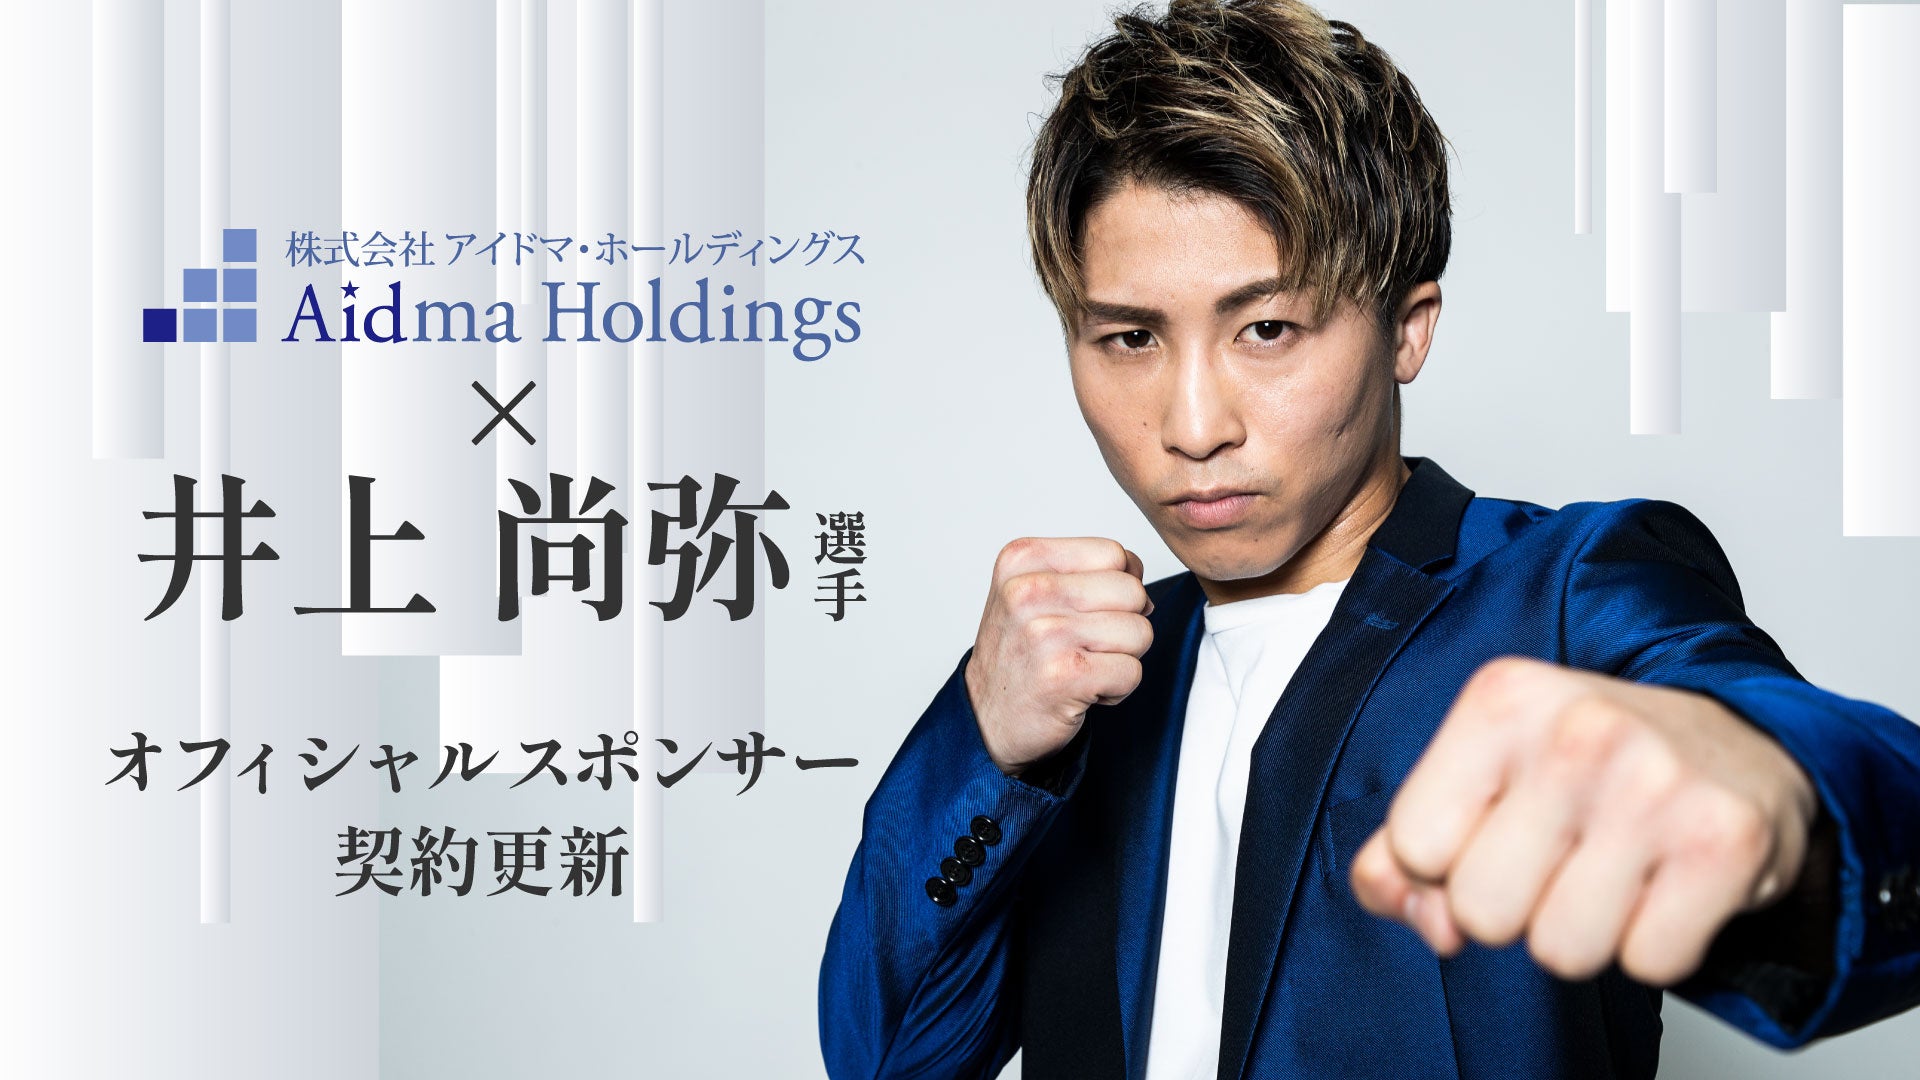 【アイドマHD】現WBC・WBO世界スーパーバンタム級王者 井上 尚弥選手とのオフィシャルスポンサー契約を更新